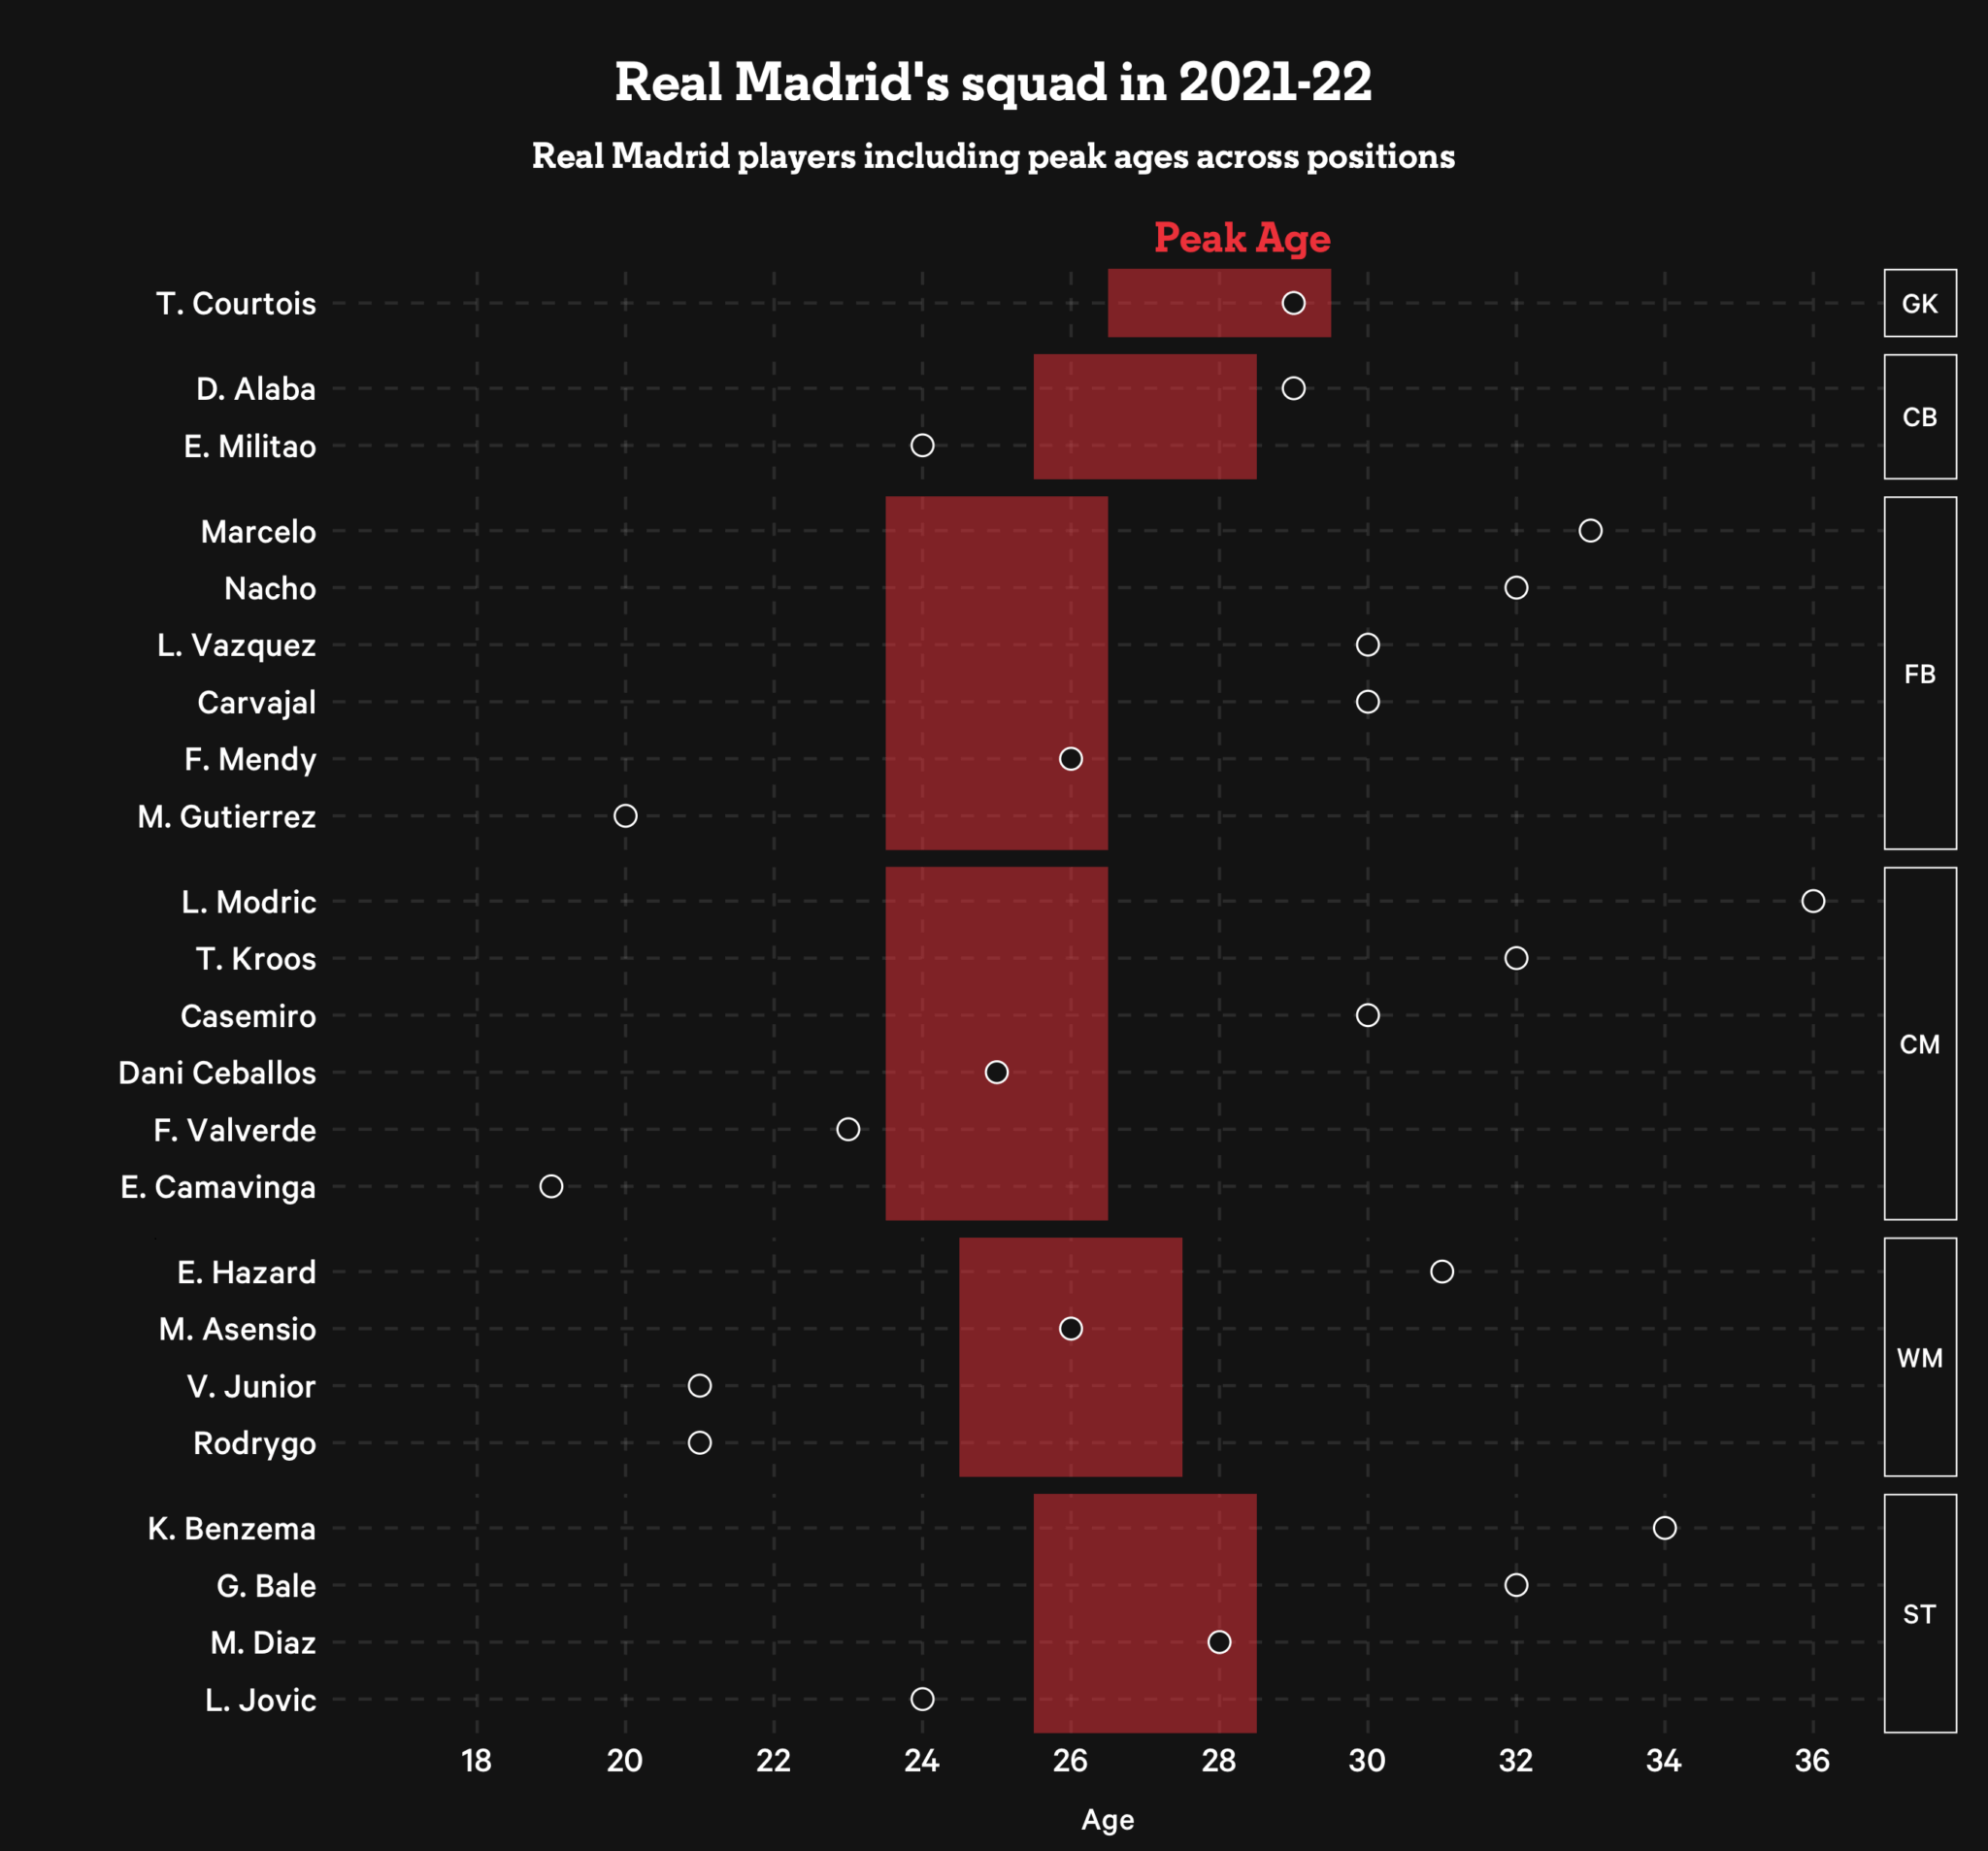 Danh sách đội 1 của Real Madrid kèm khoảng thời gian đỉnh cao (đỏ) và độ tuổi hiện tại (chấm đen). Độ tuổi đỉnh cao của tiền vệ là trước 24 đến sau 26 nhưng 3 tiền vệ hàng đầu của Los Blancos (Kross, Casemiro và Modric) đều đã vượt quá mốc lý thuyết này quá xa